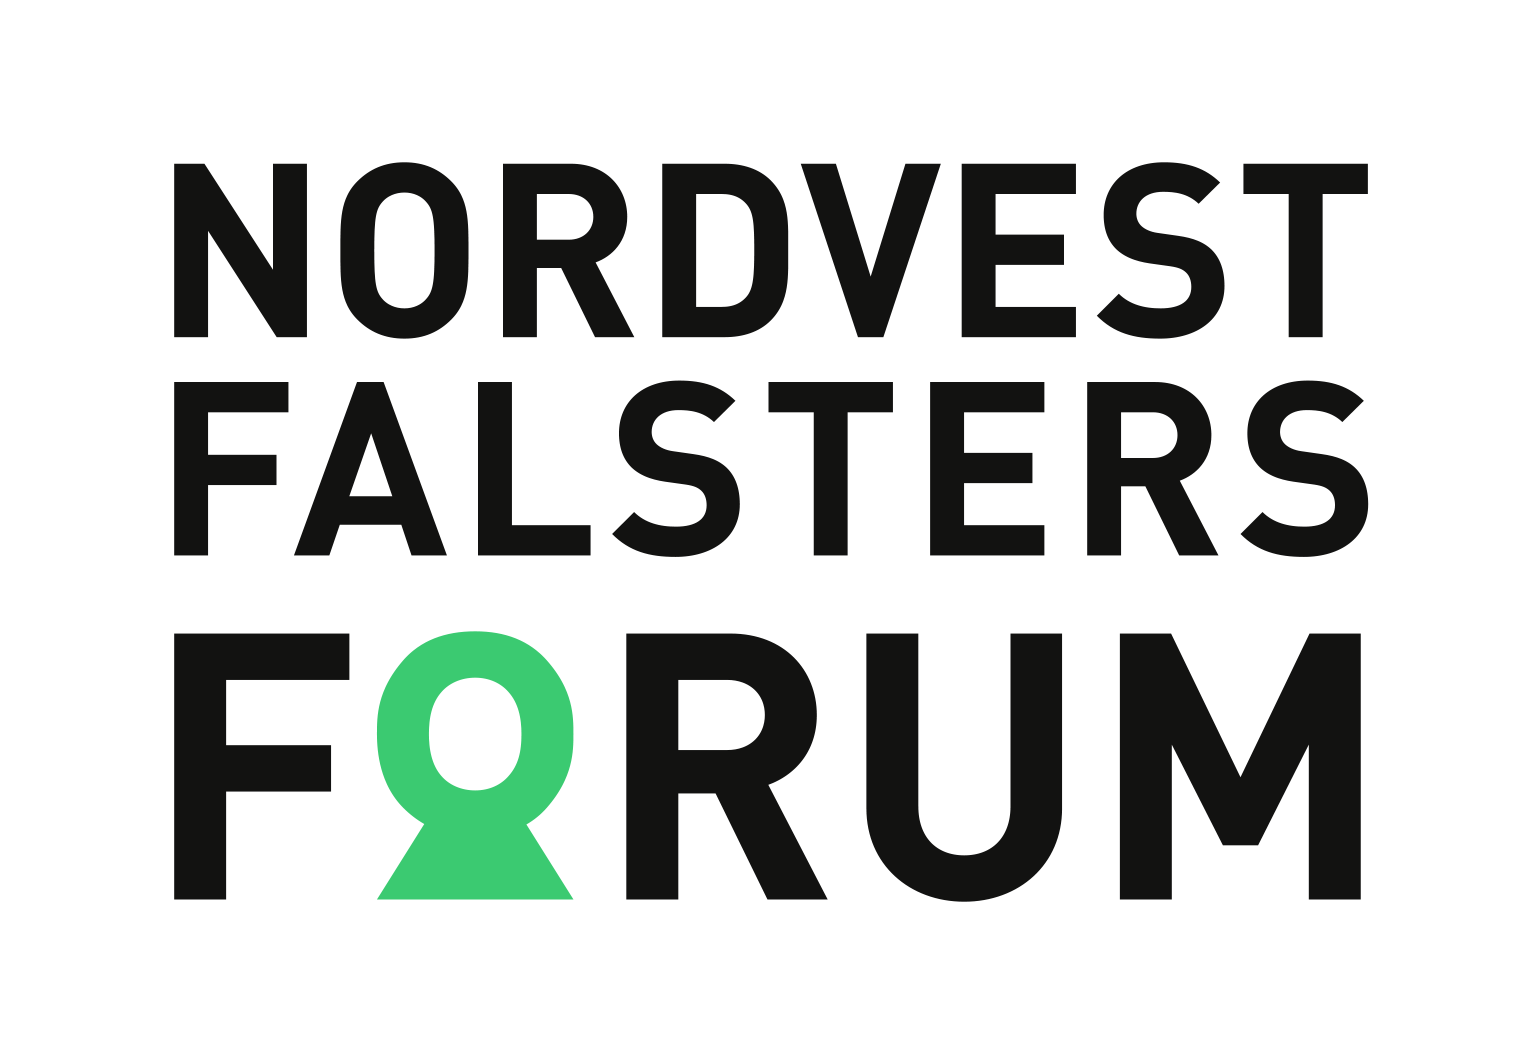 Nørre Vedby Forum